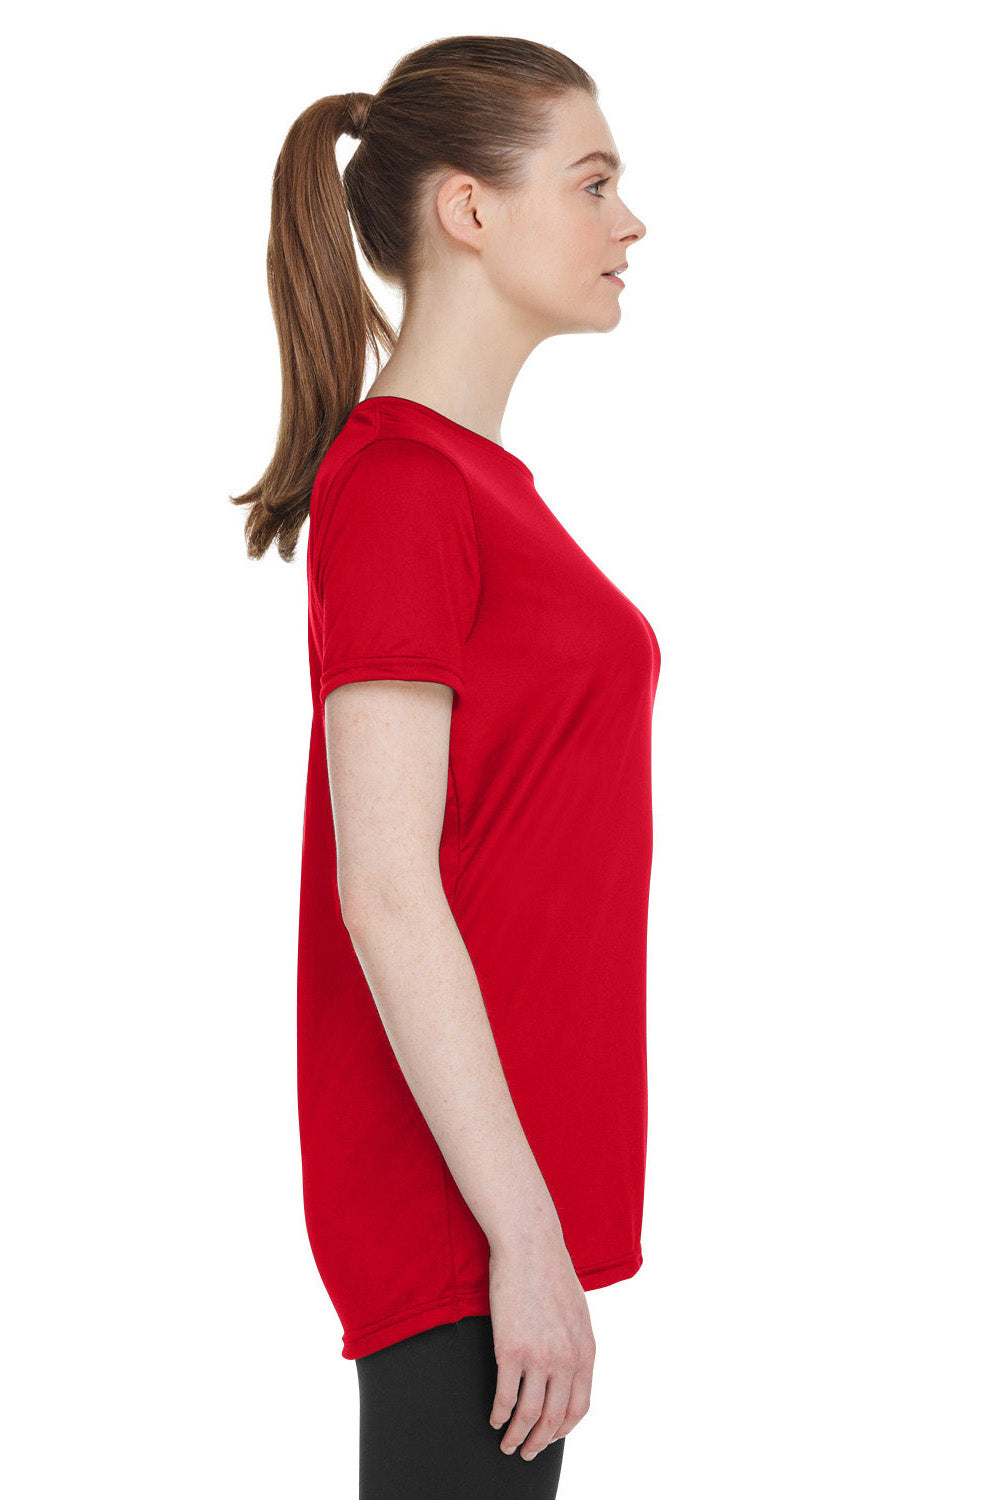 Under Armour 1376847 Womens Team Tech Moisture Wicking Short Sleeve Crewneck T-Shirt Red Model Side